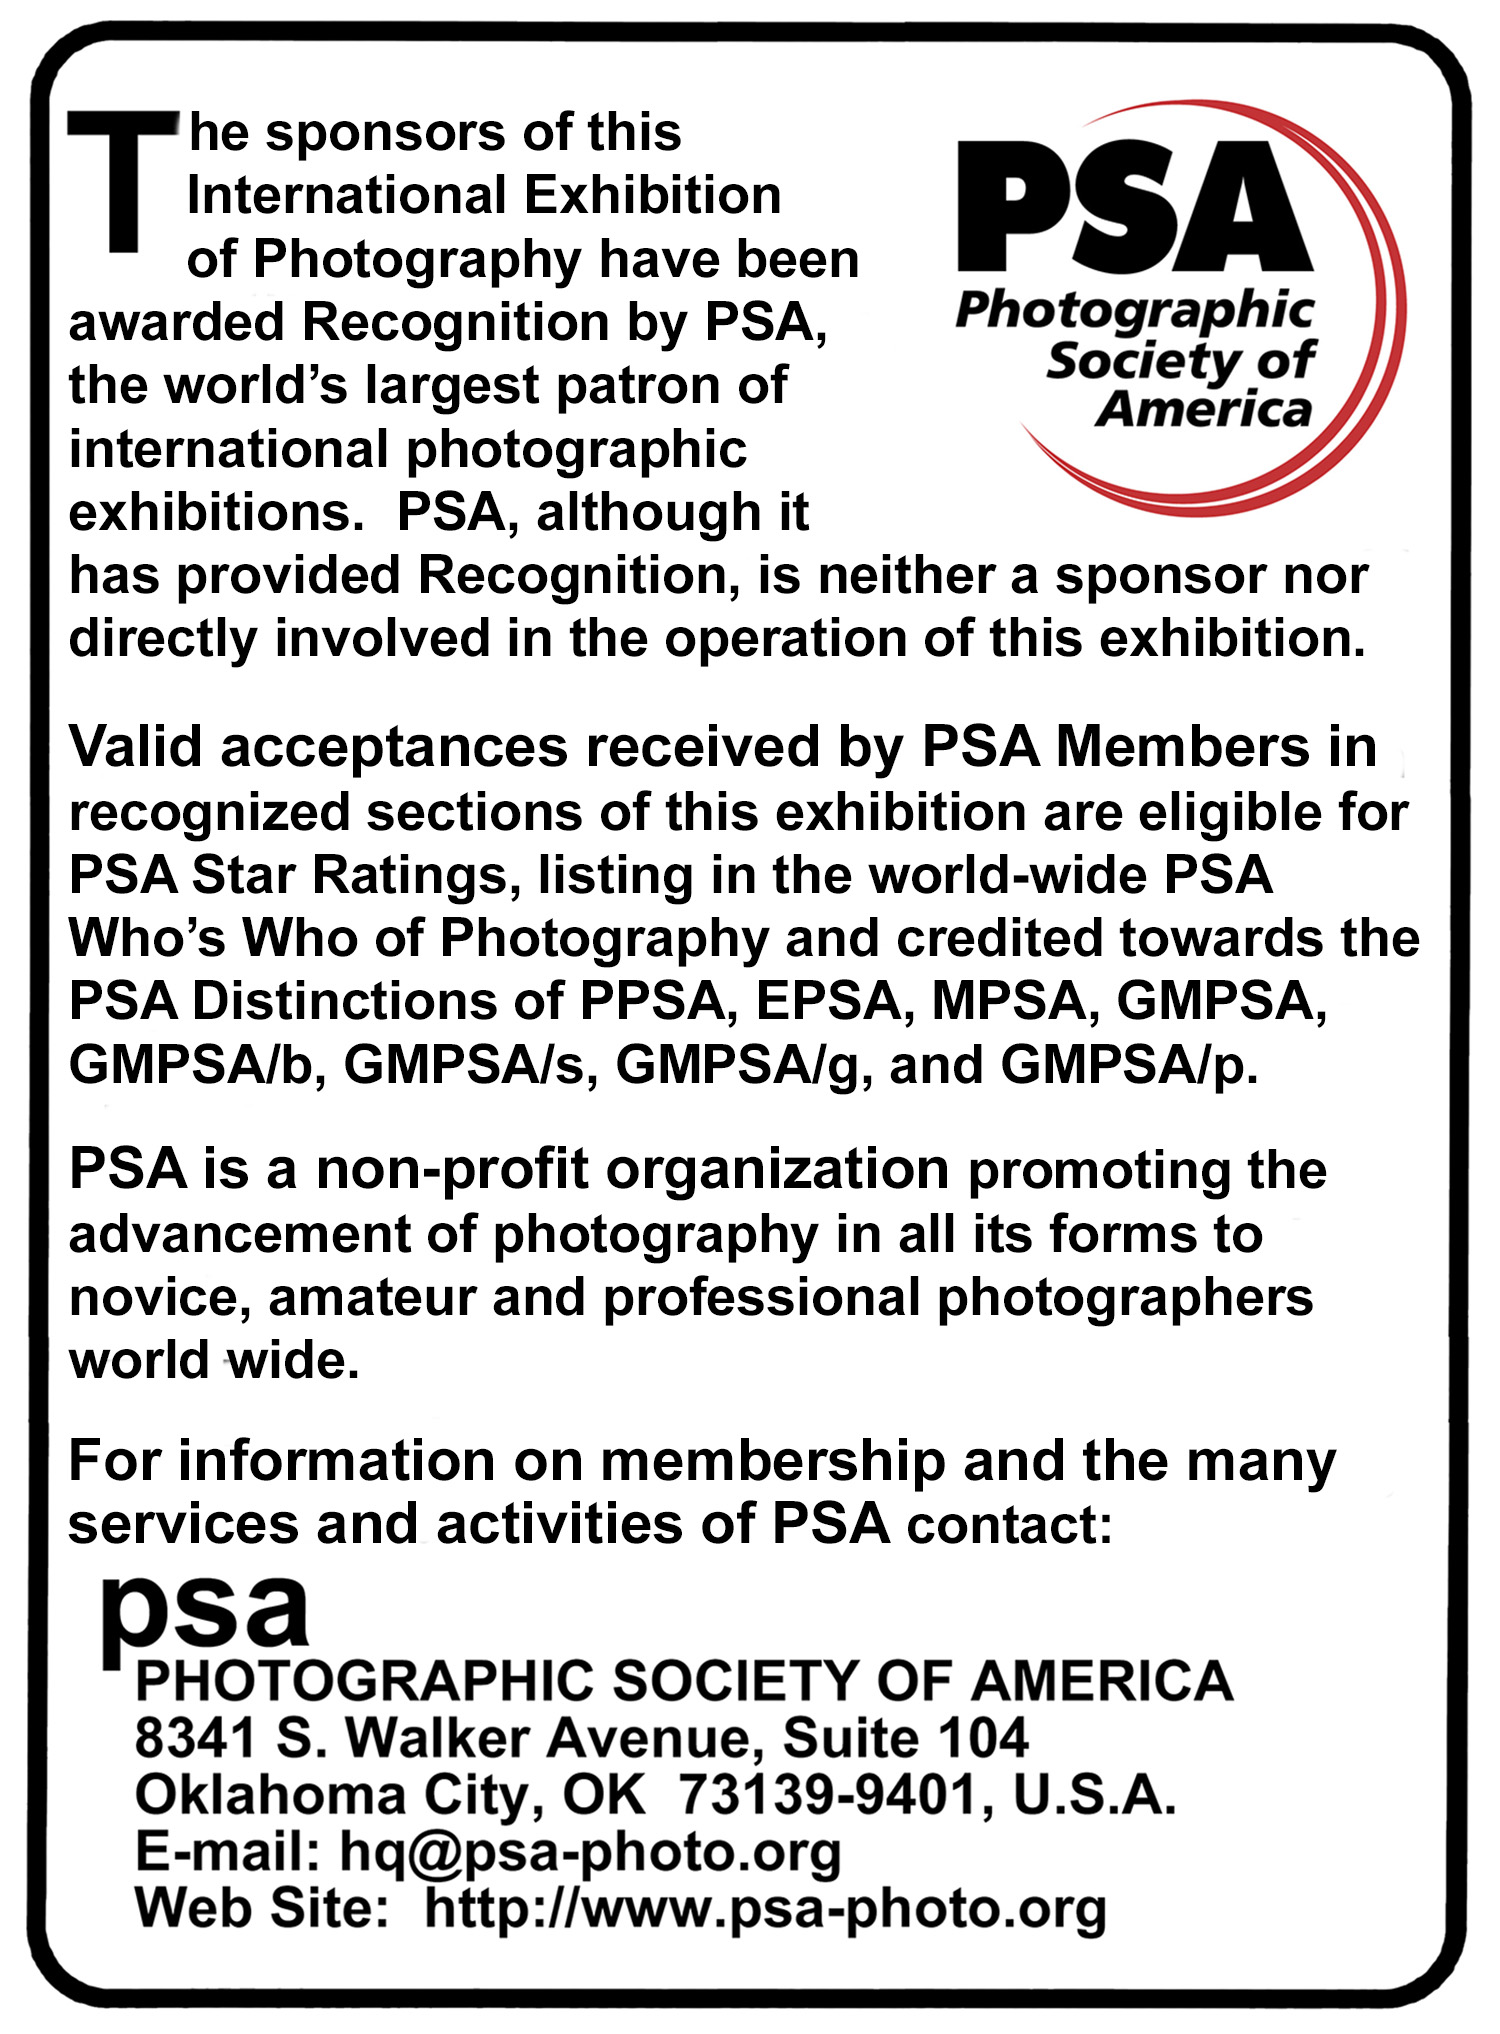 PSA Recognition Image